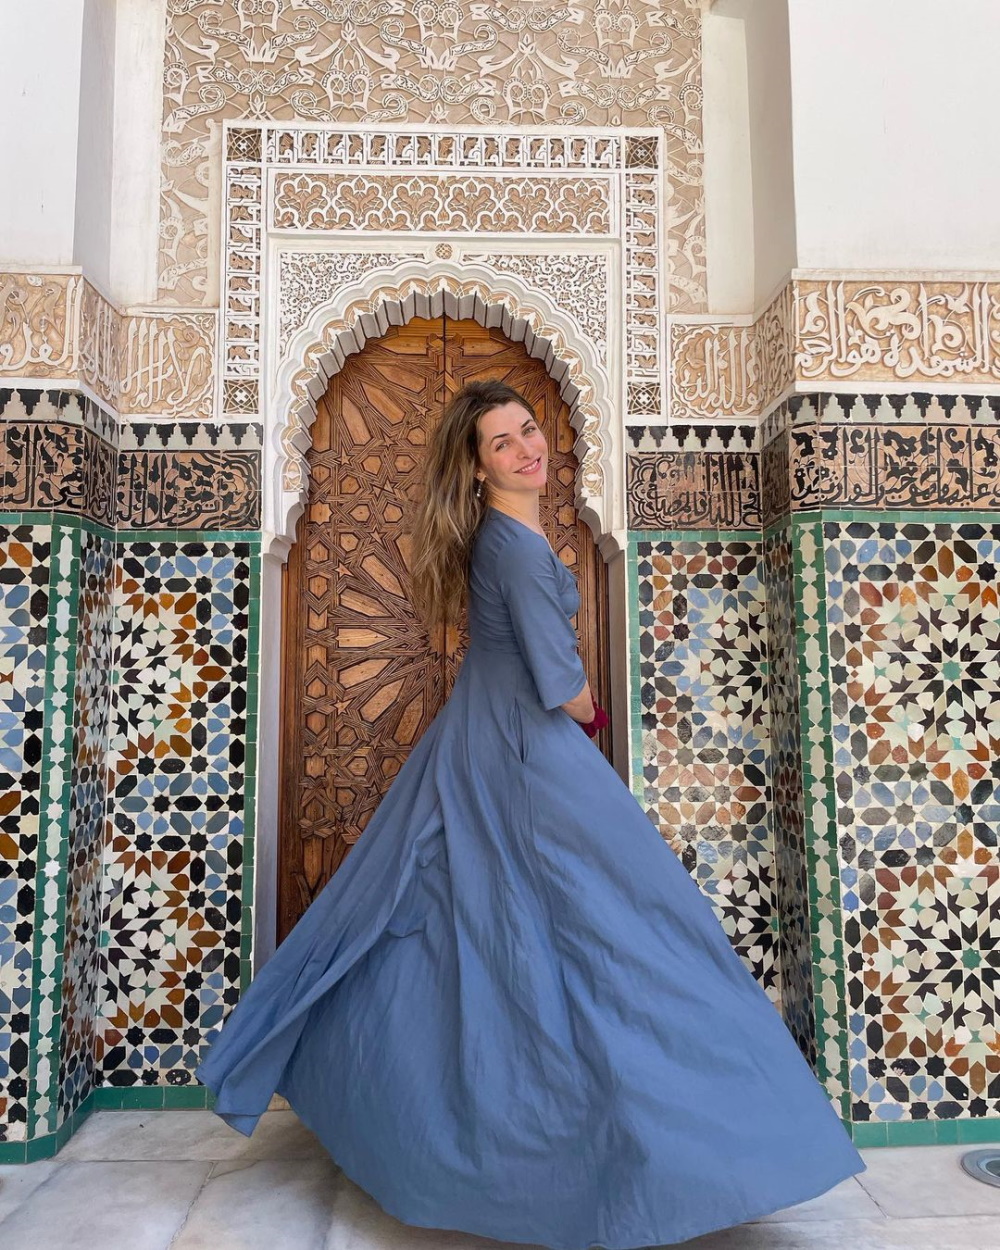 Η Βασιλική Τρουφάκου στο Μαρόκο.